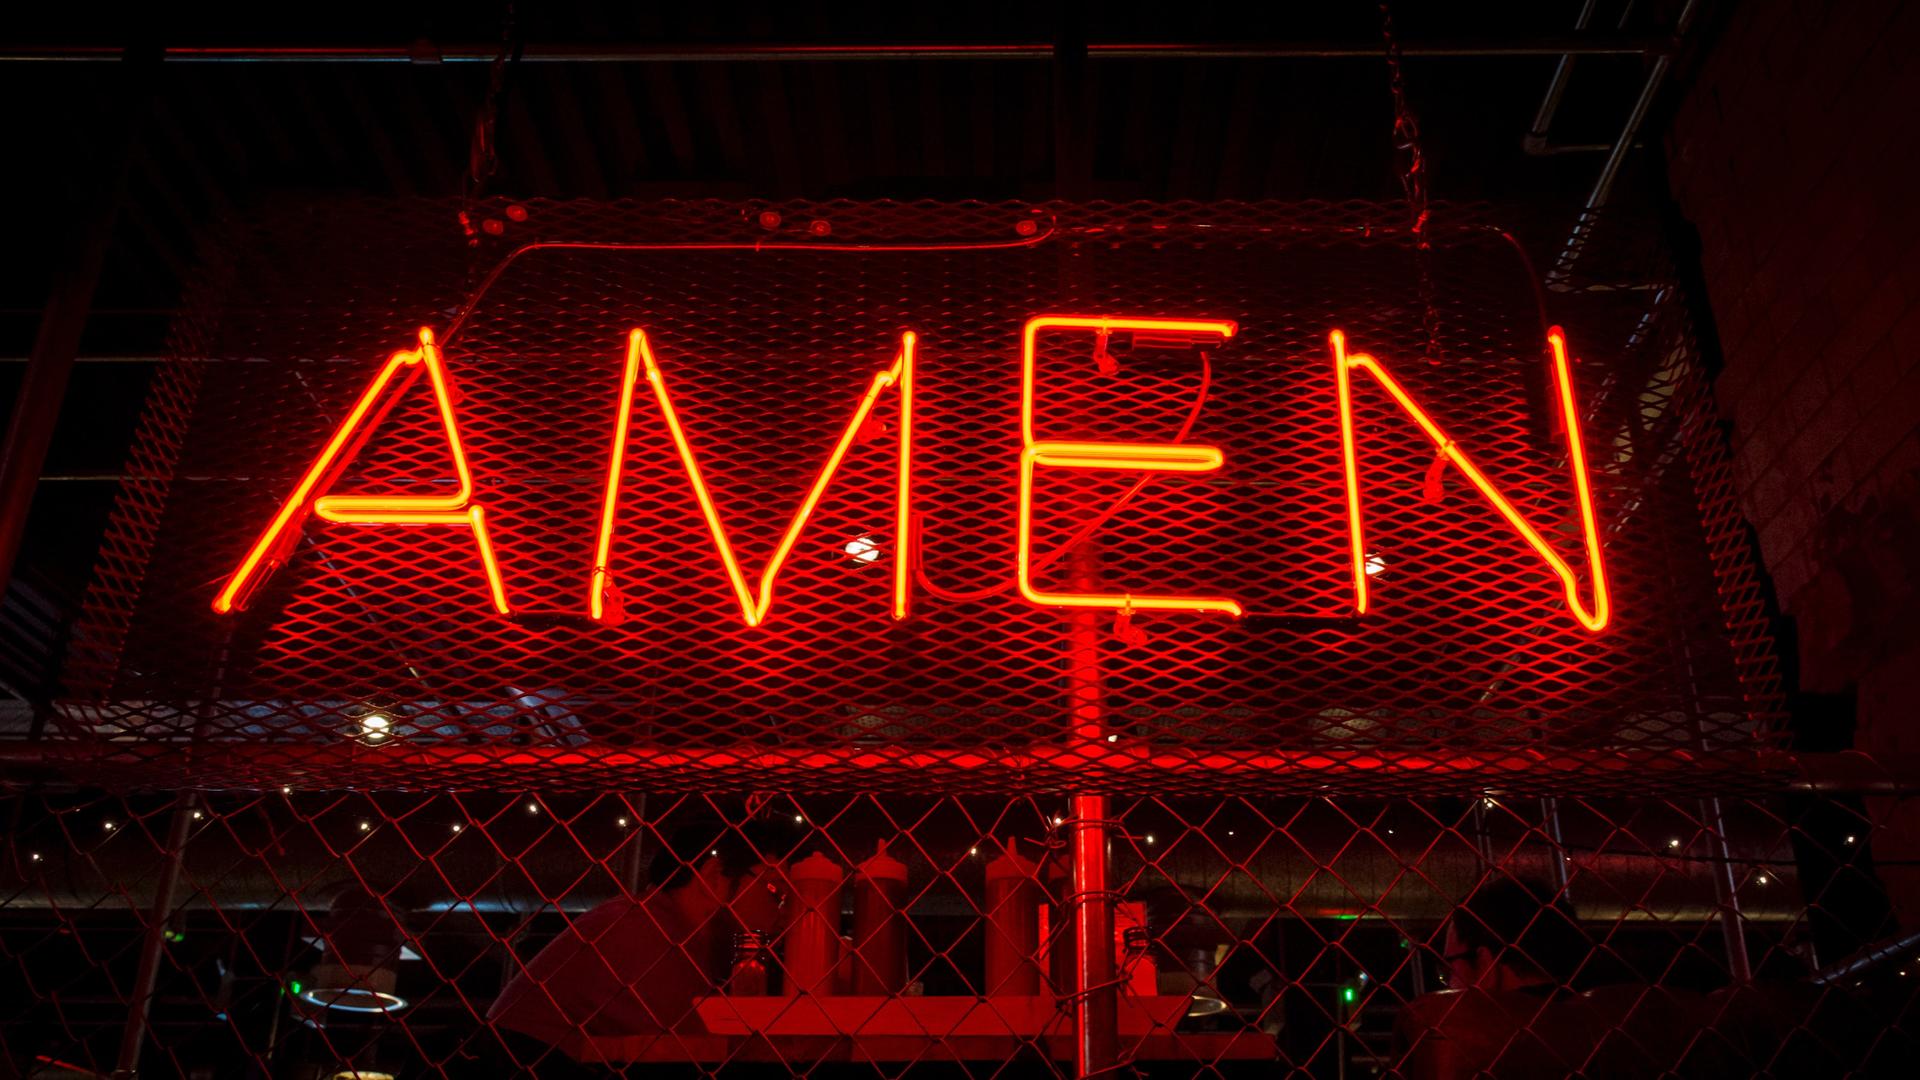 In großen roten Neonbuchstaben hängt das Wort "Amen" an einem Drahtzaun.